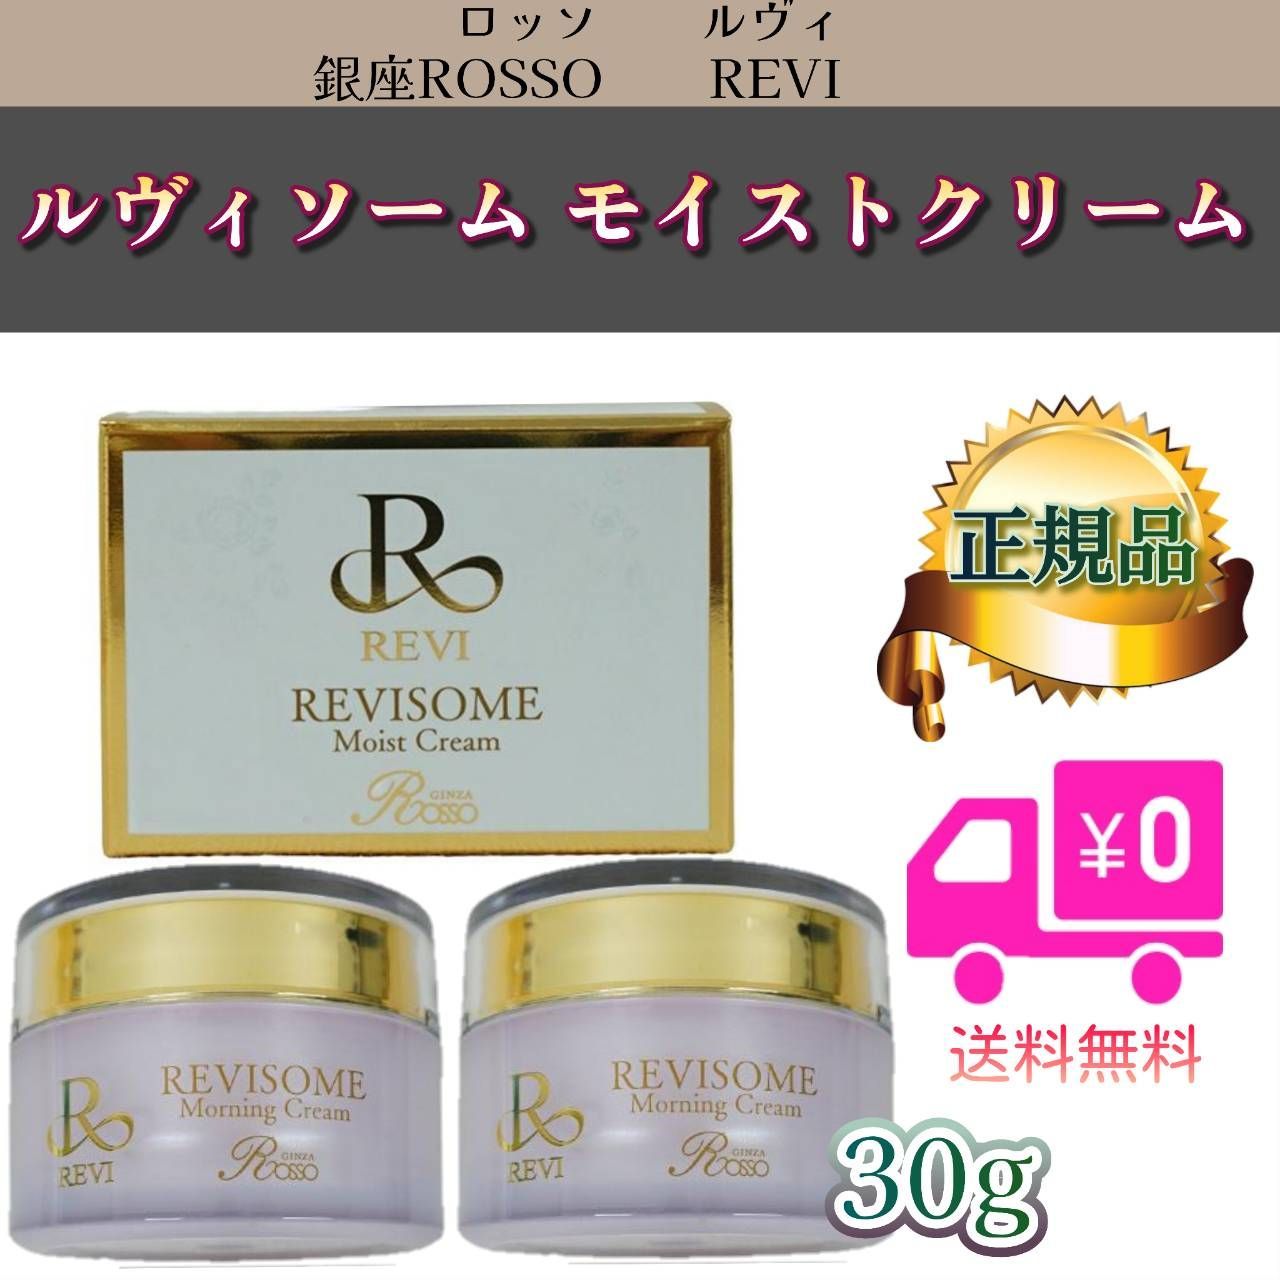 ルヴィ ソーム モイスト クリーム 30g 基礎化粧品 REVI - 基礎化粧品